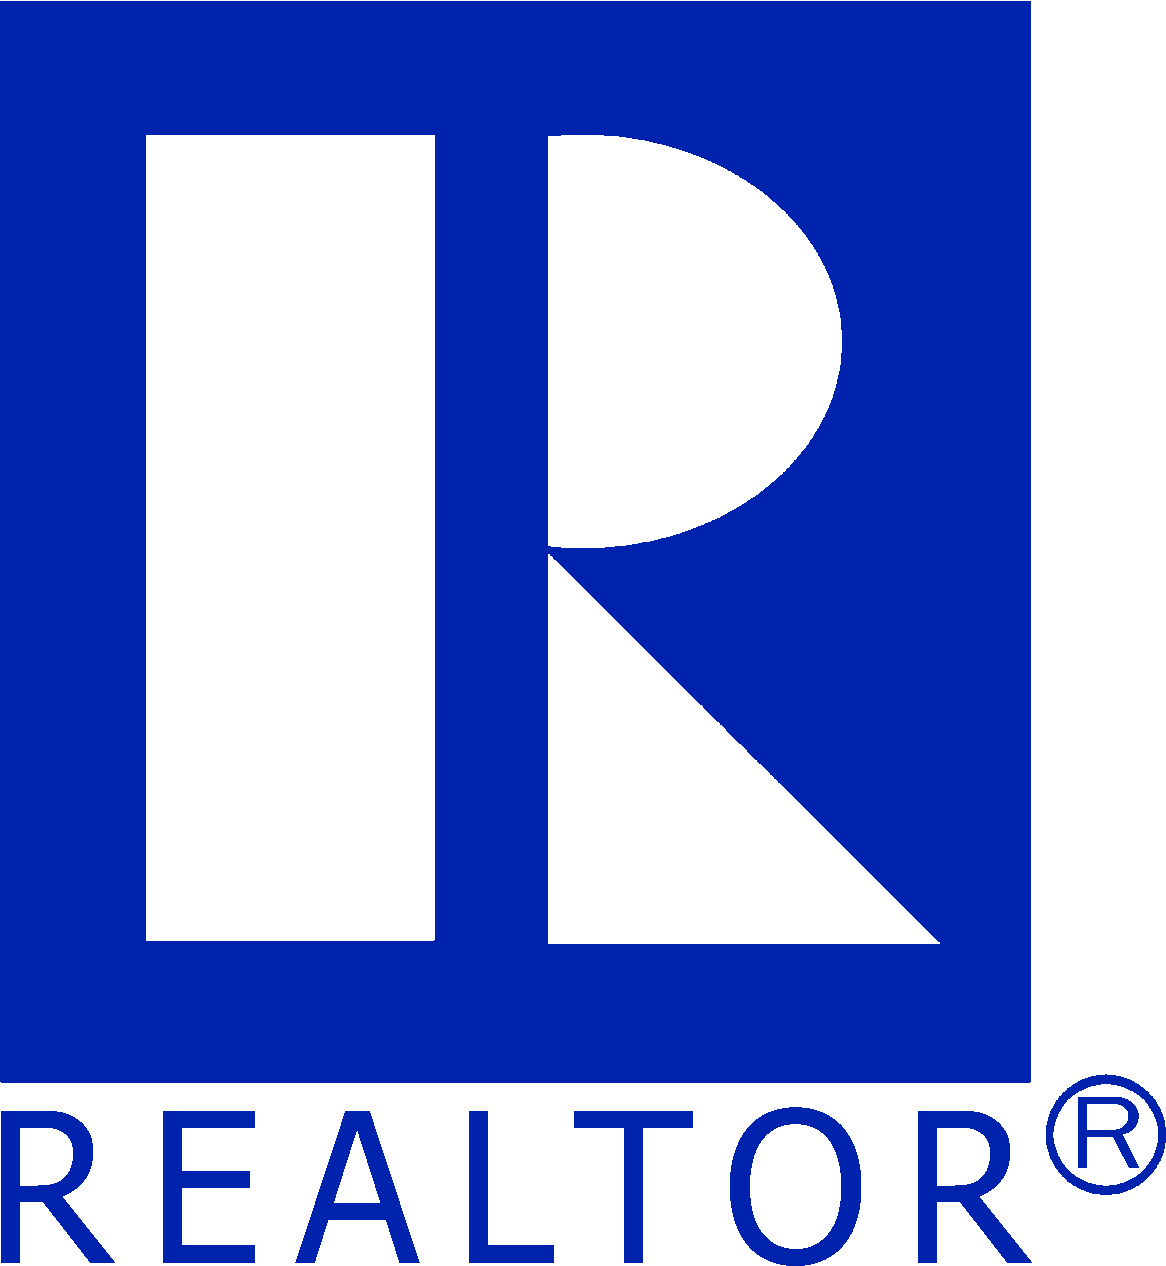 Circle R Realtor Logo - REALTOR Logos